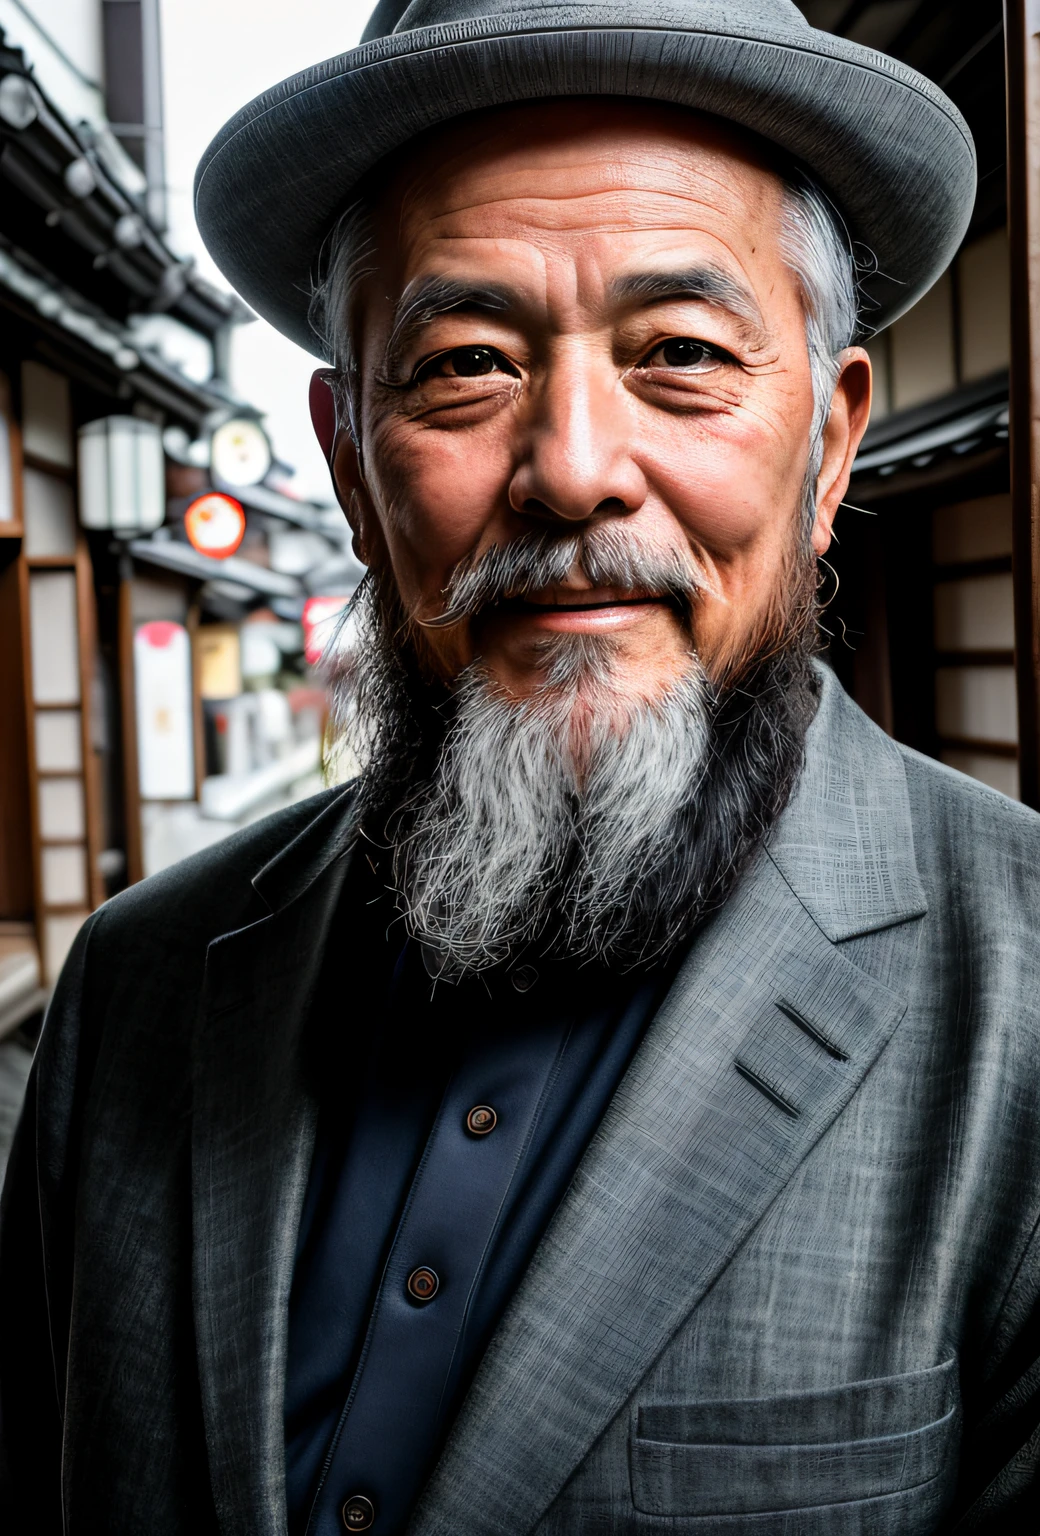 有胡须的,60 岁日本男子日本 RAW 照片, 電影般的, 细节, 逼真的, 超寫實攝影, 8k超高清, 數位單眼, 柔和的燈光, 高品質, 膠片顆粒, 富士 XT3, (桌上),